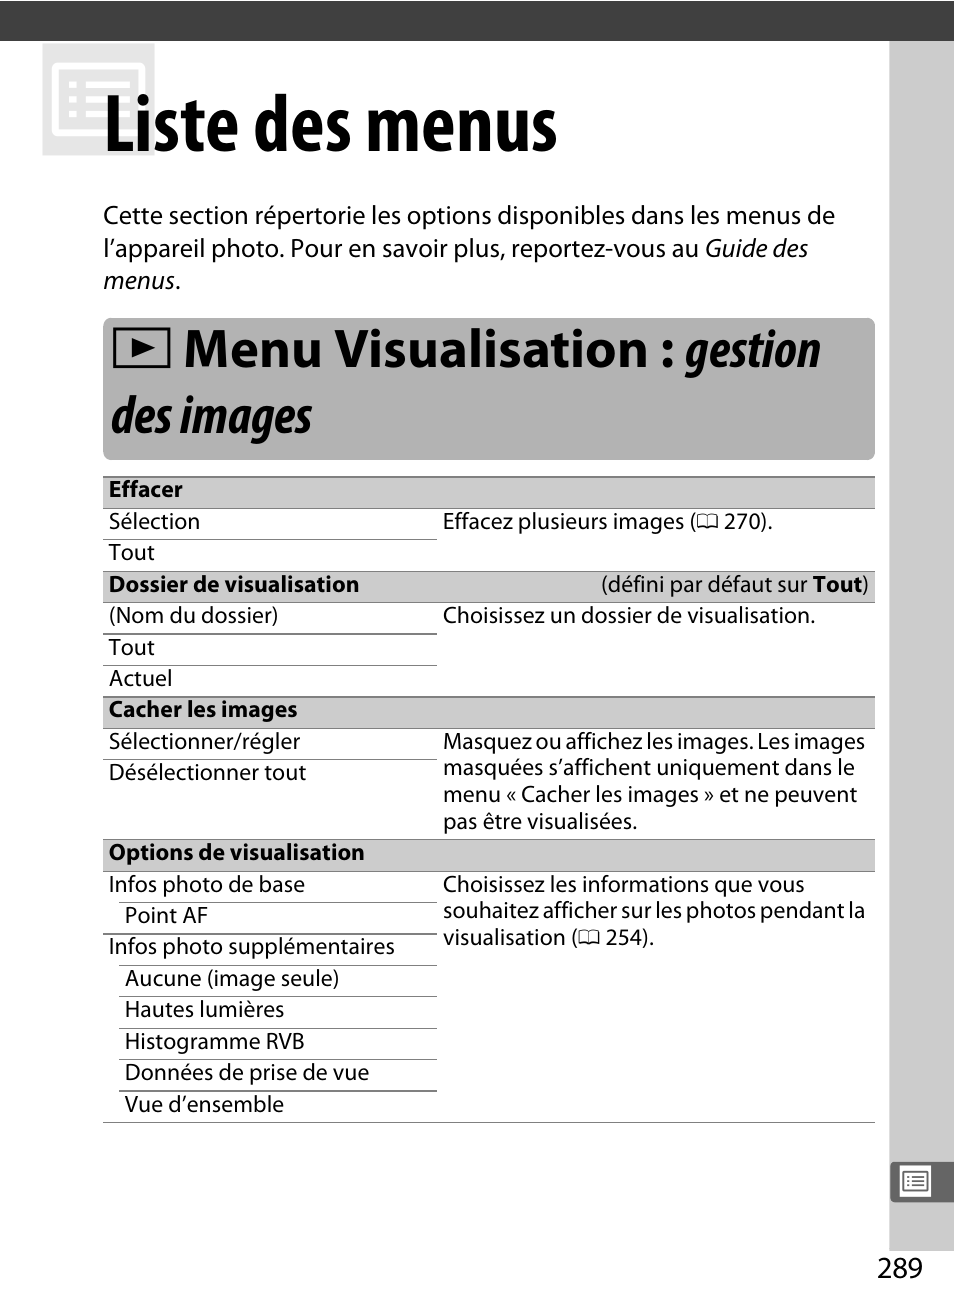 Liste des menus, Menu visualisation : gestion des images, 0 289) et que | D menu visualisation : gestion des images | Nikon D5 Manuel d'utilisation | Page 311 / 424